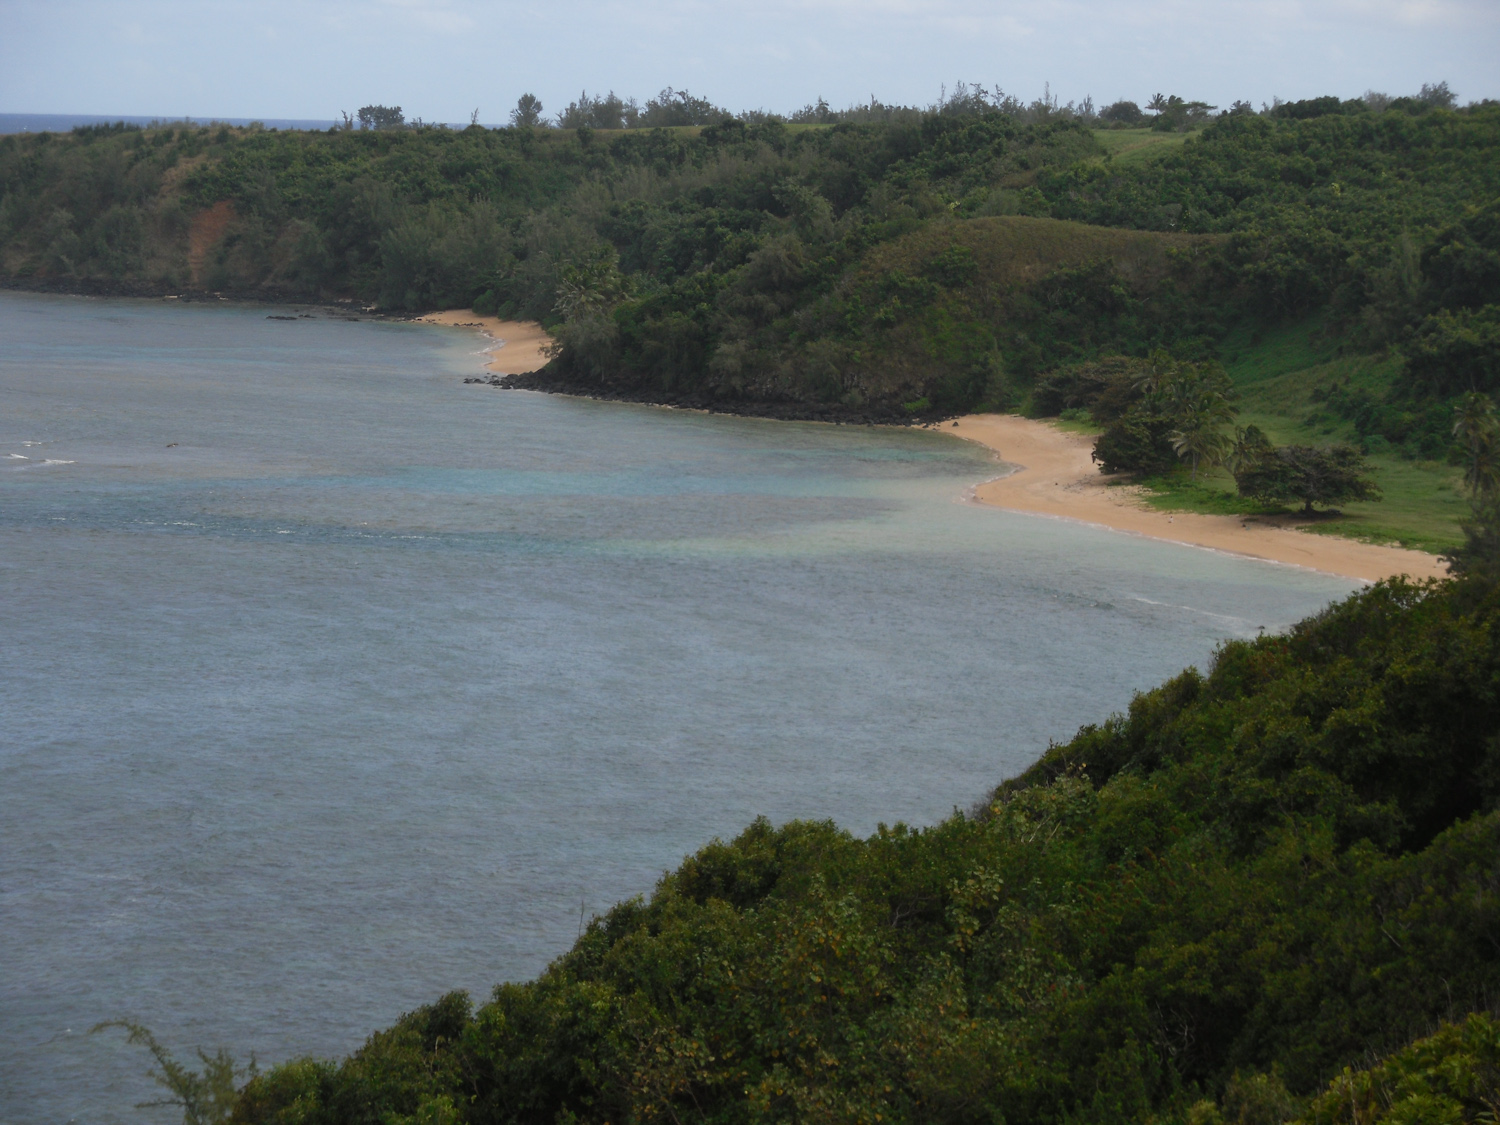 View of Pila'a beach from trailhead